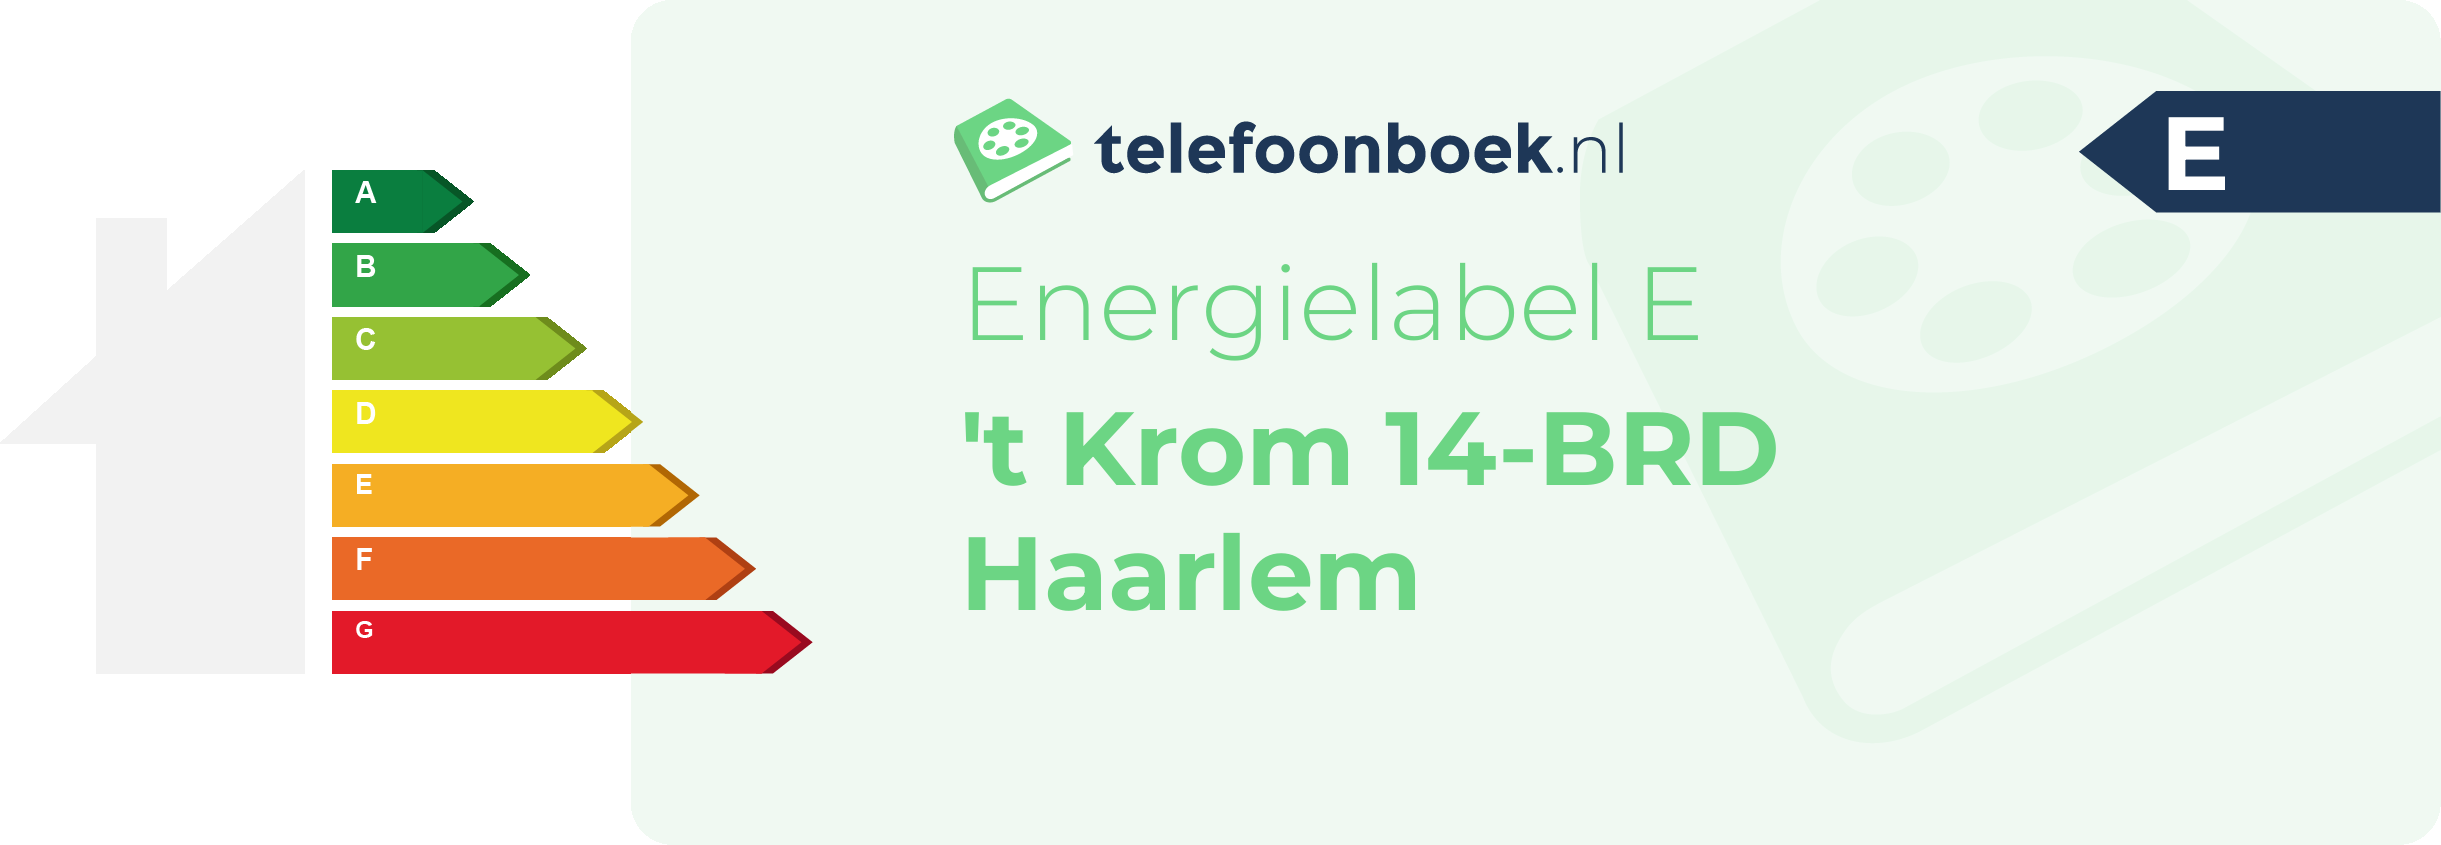 Energielabel 't Krom 14-BRD Haarlem